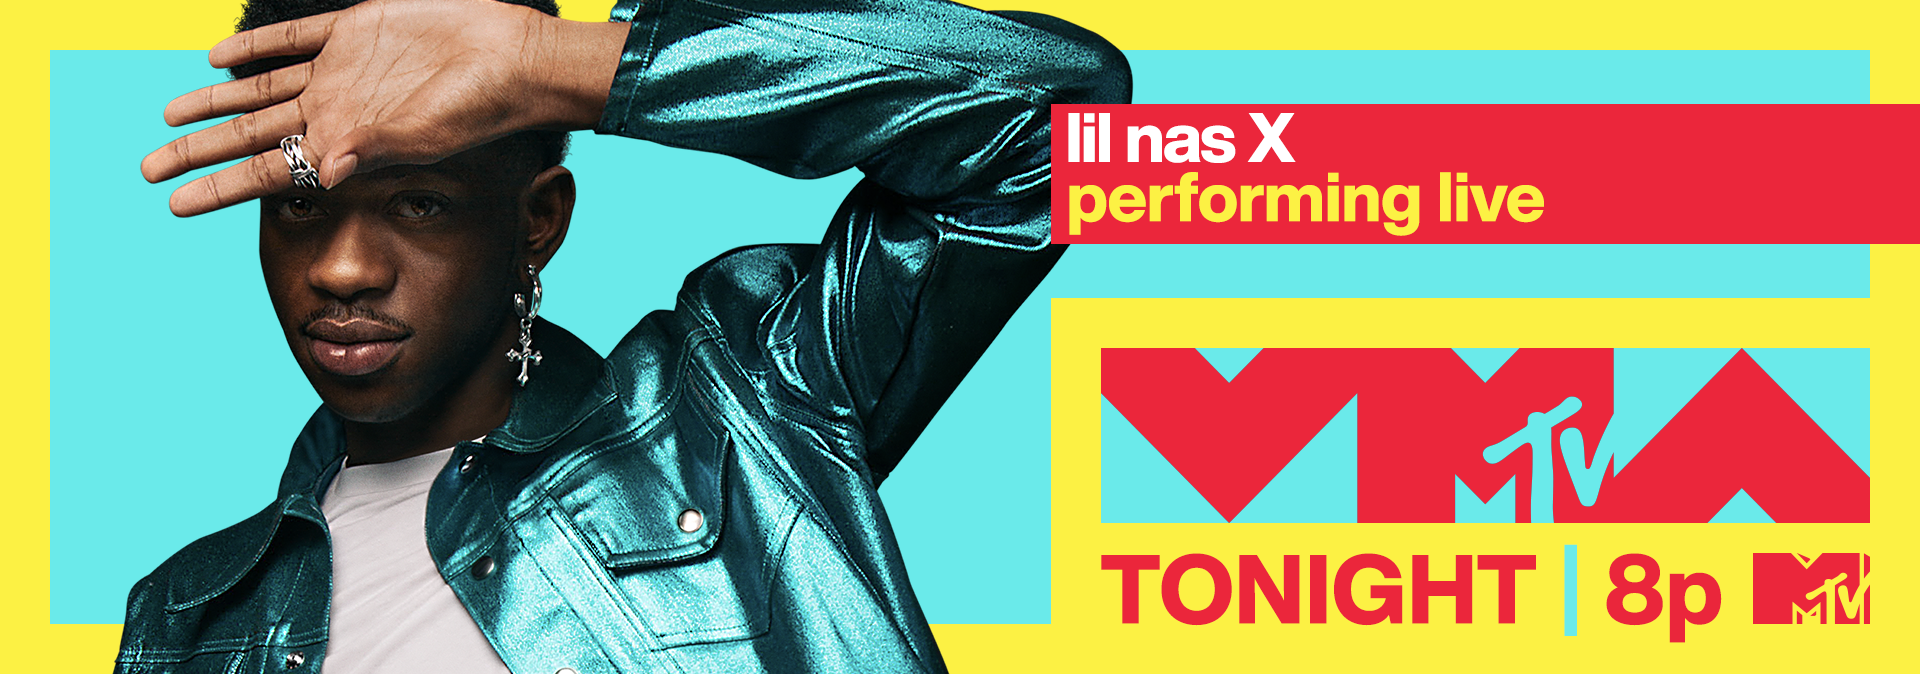 VMA-TaxiTop-LilNasX-Tonight.png